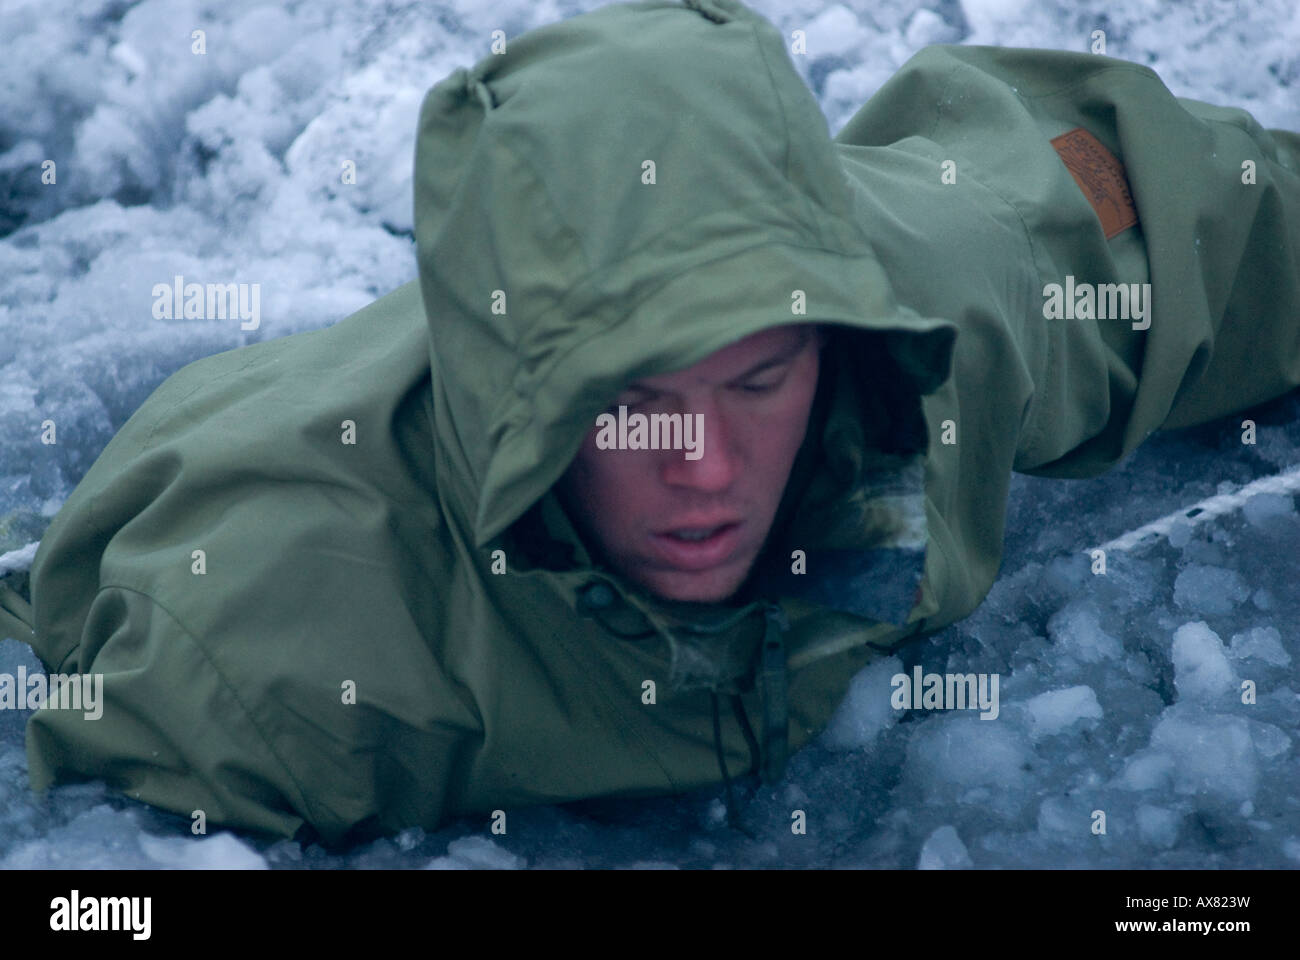 Kenneth nel fiordo congelato acqua a meno 2C imparare come ci si sente ad andare attraverso la sopravvivenza di ghiaccio settimana speciale Danese per Foto Stock